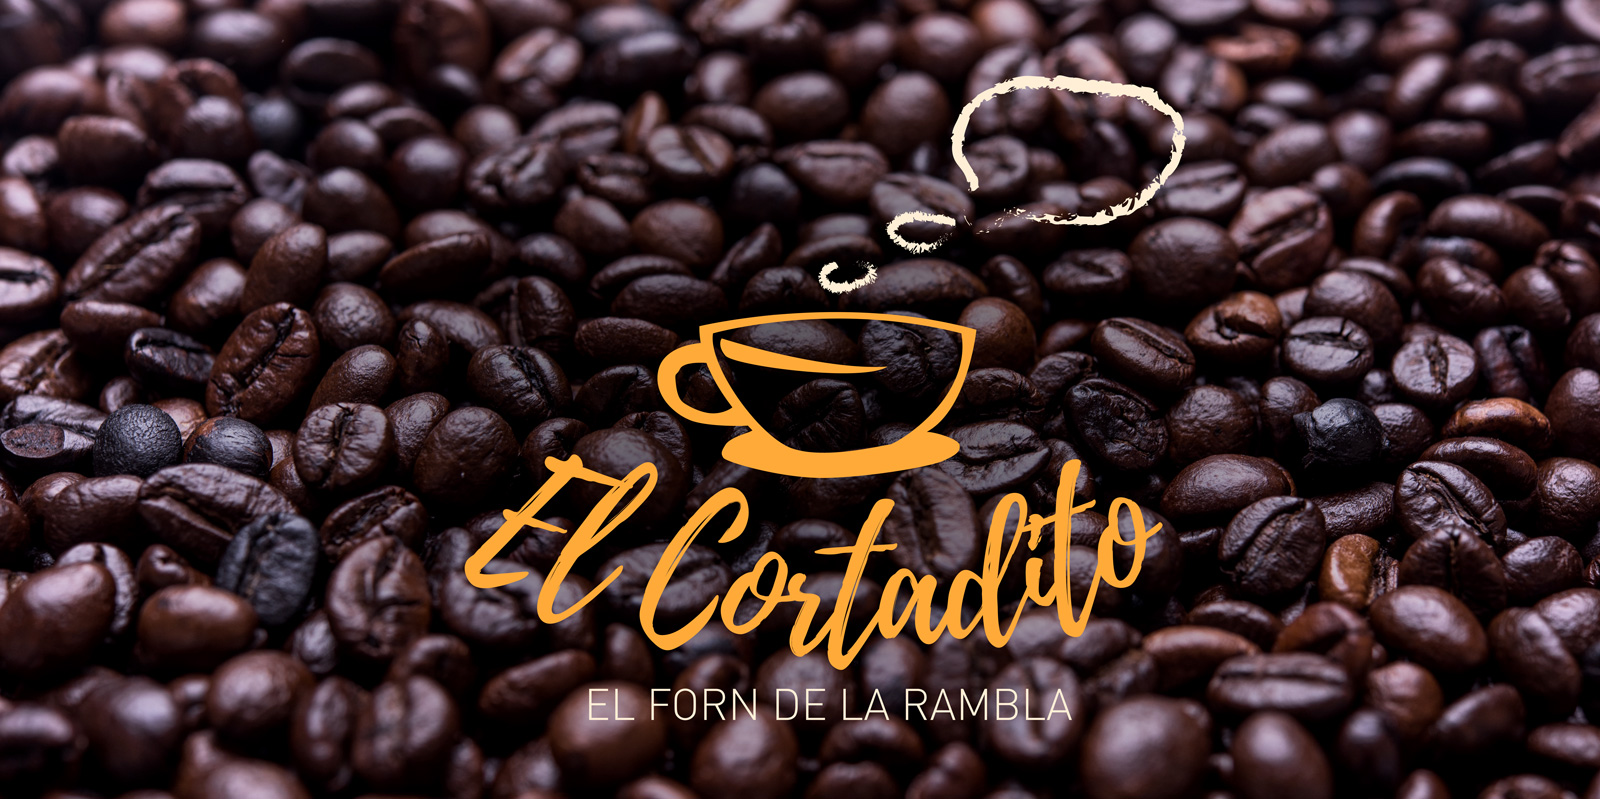 Diseño gráfico y creativo de cartas de restaurante - El Cortadito